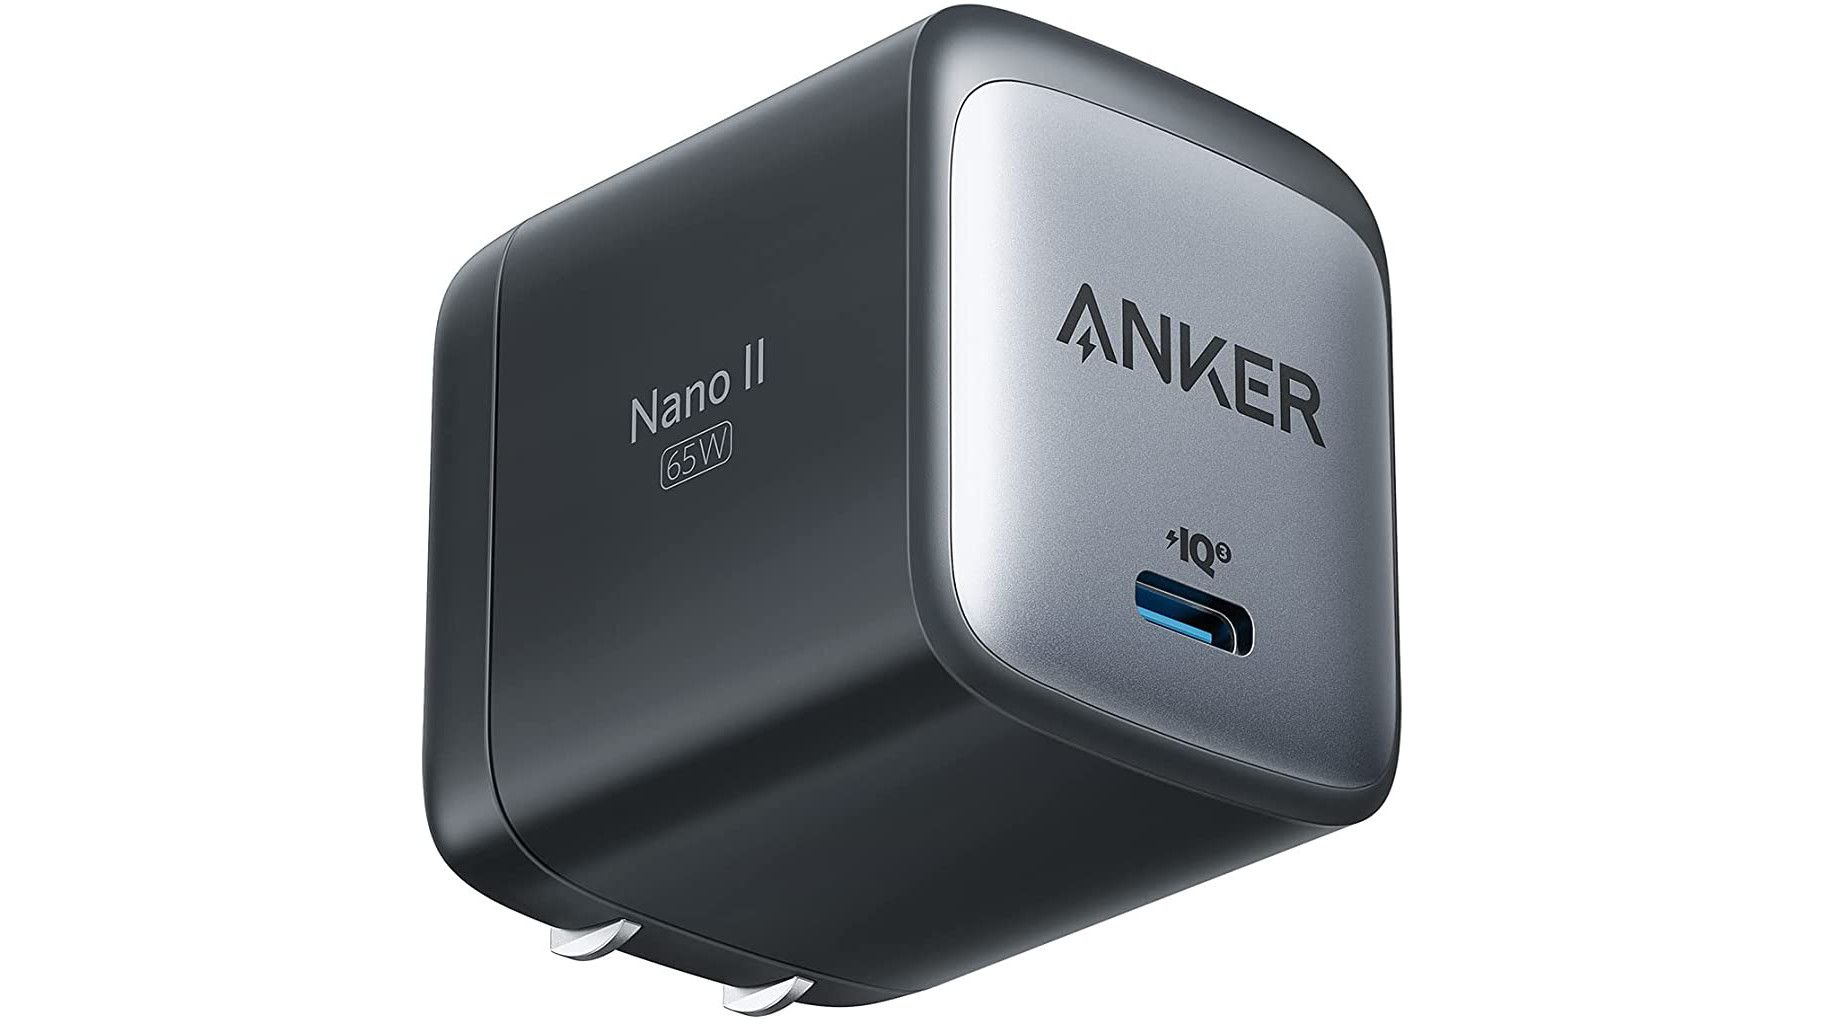 Anker-715-nano-ii-usbc-charger-65W-render-02